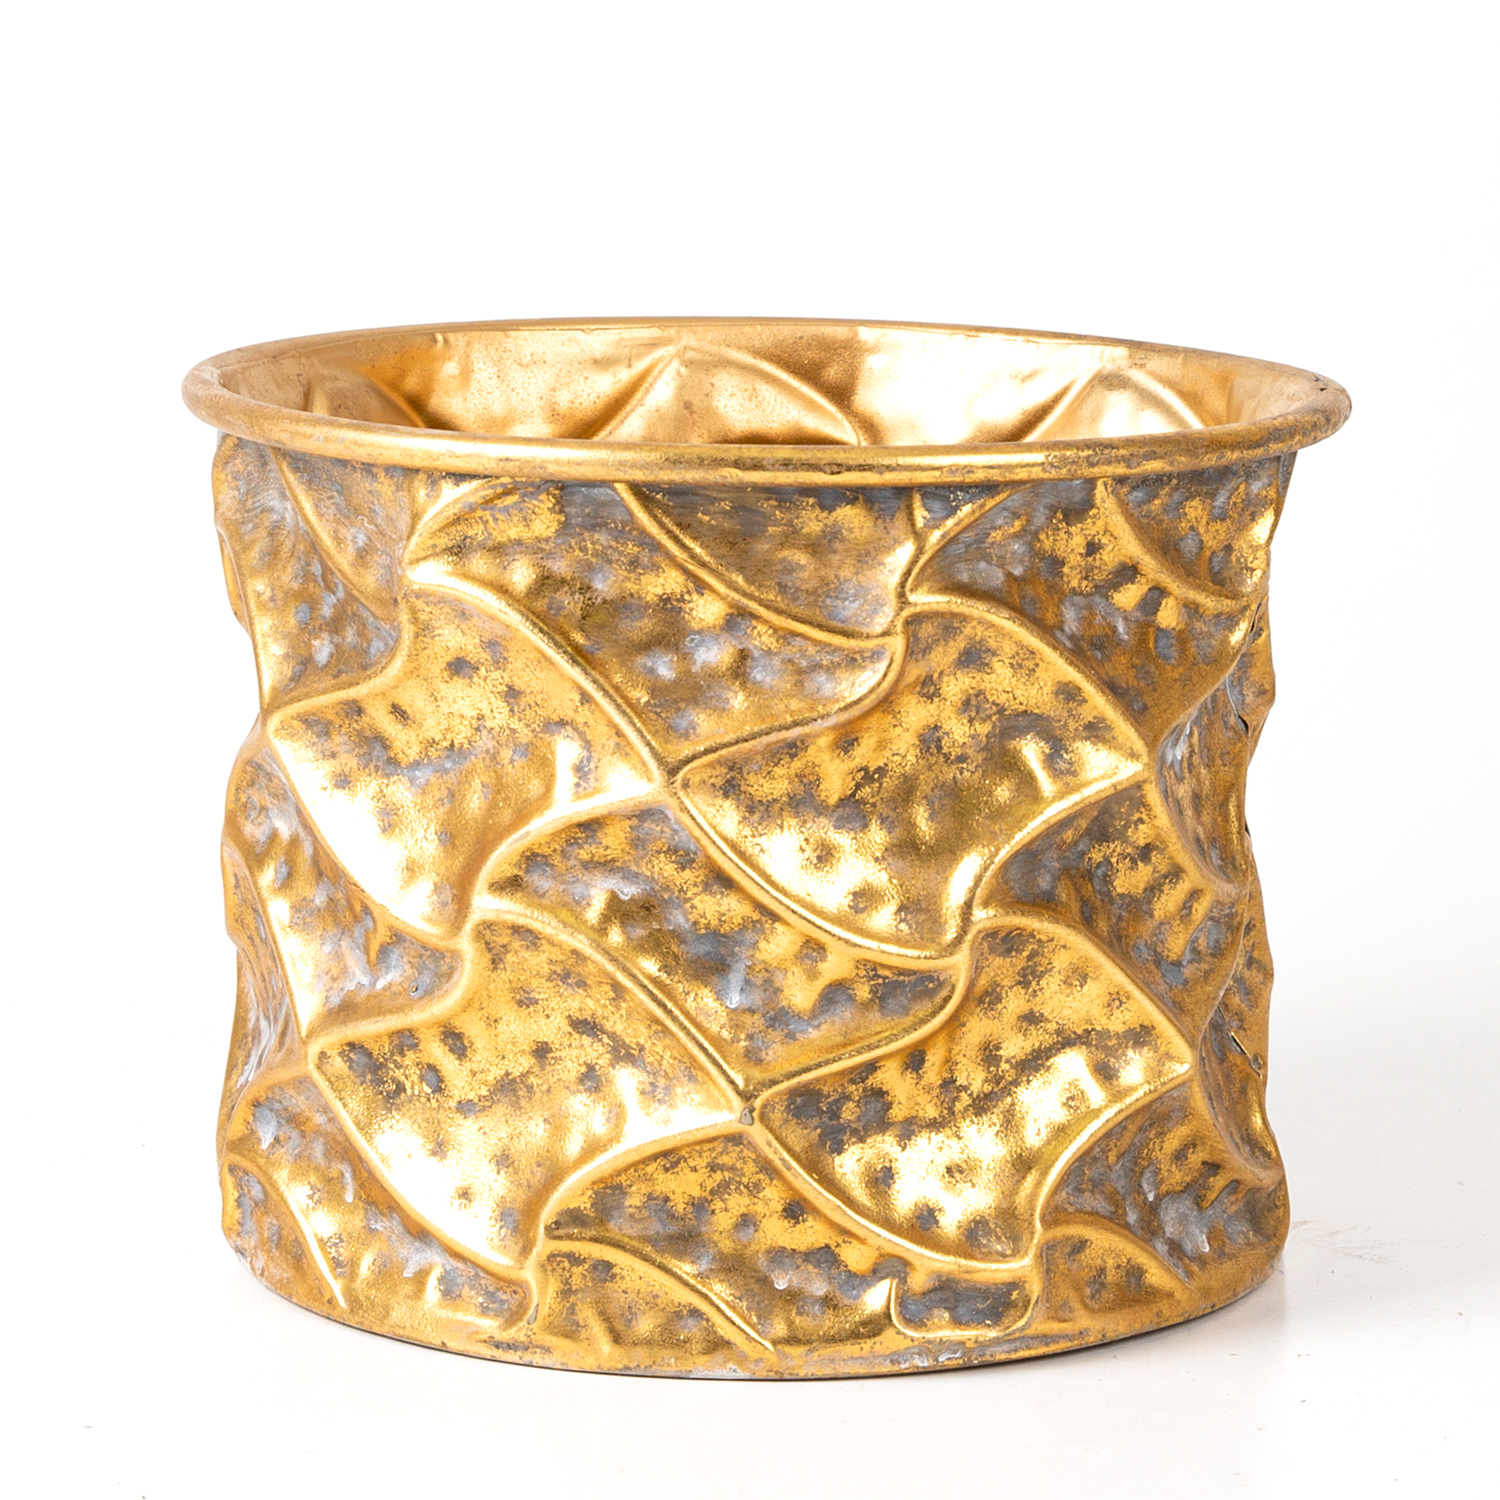 Kabartma Desenli Metal Çiçeklik Saksı Altın Eskitme 25,5x19,5x25,5 Cm.